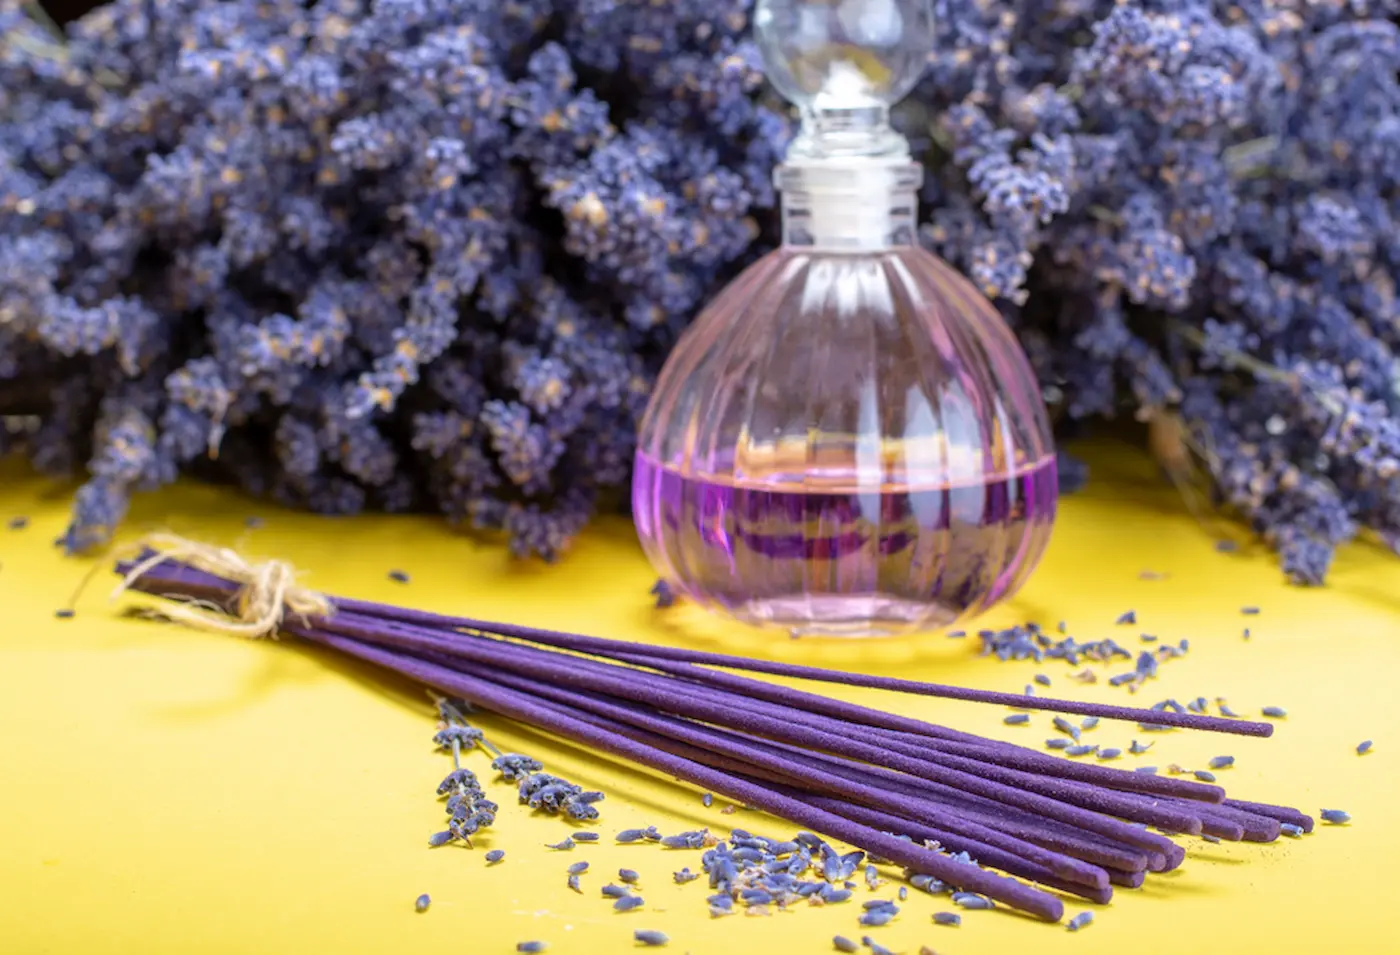 lavender incense